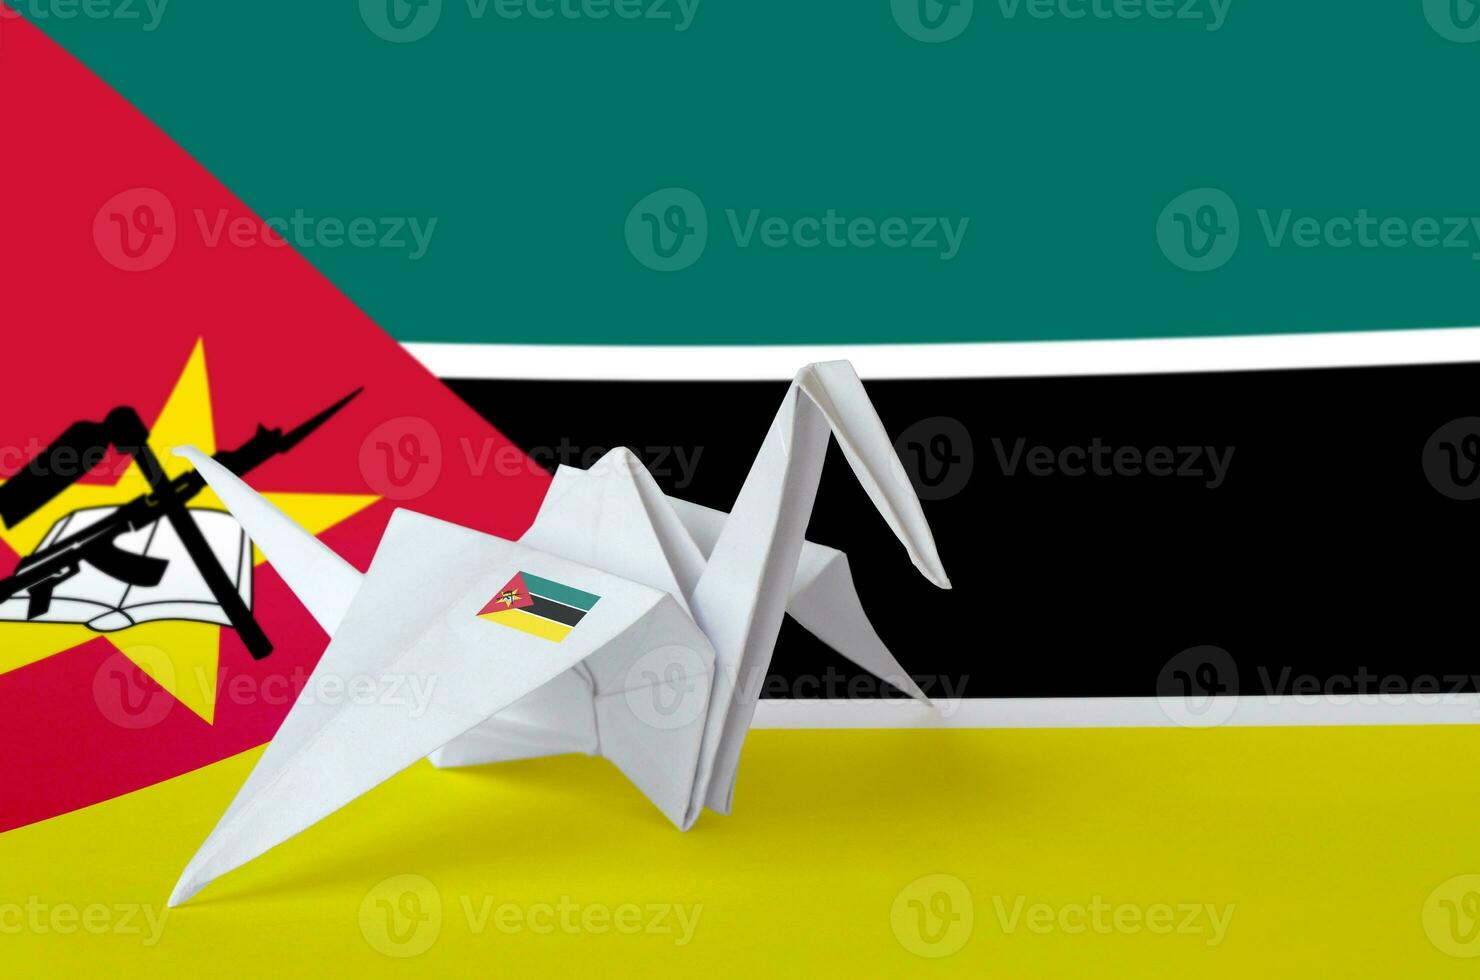 Mozambique bandera representado en papel origami grua ala. hecho a mano letras concepto foto